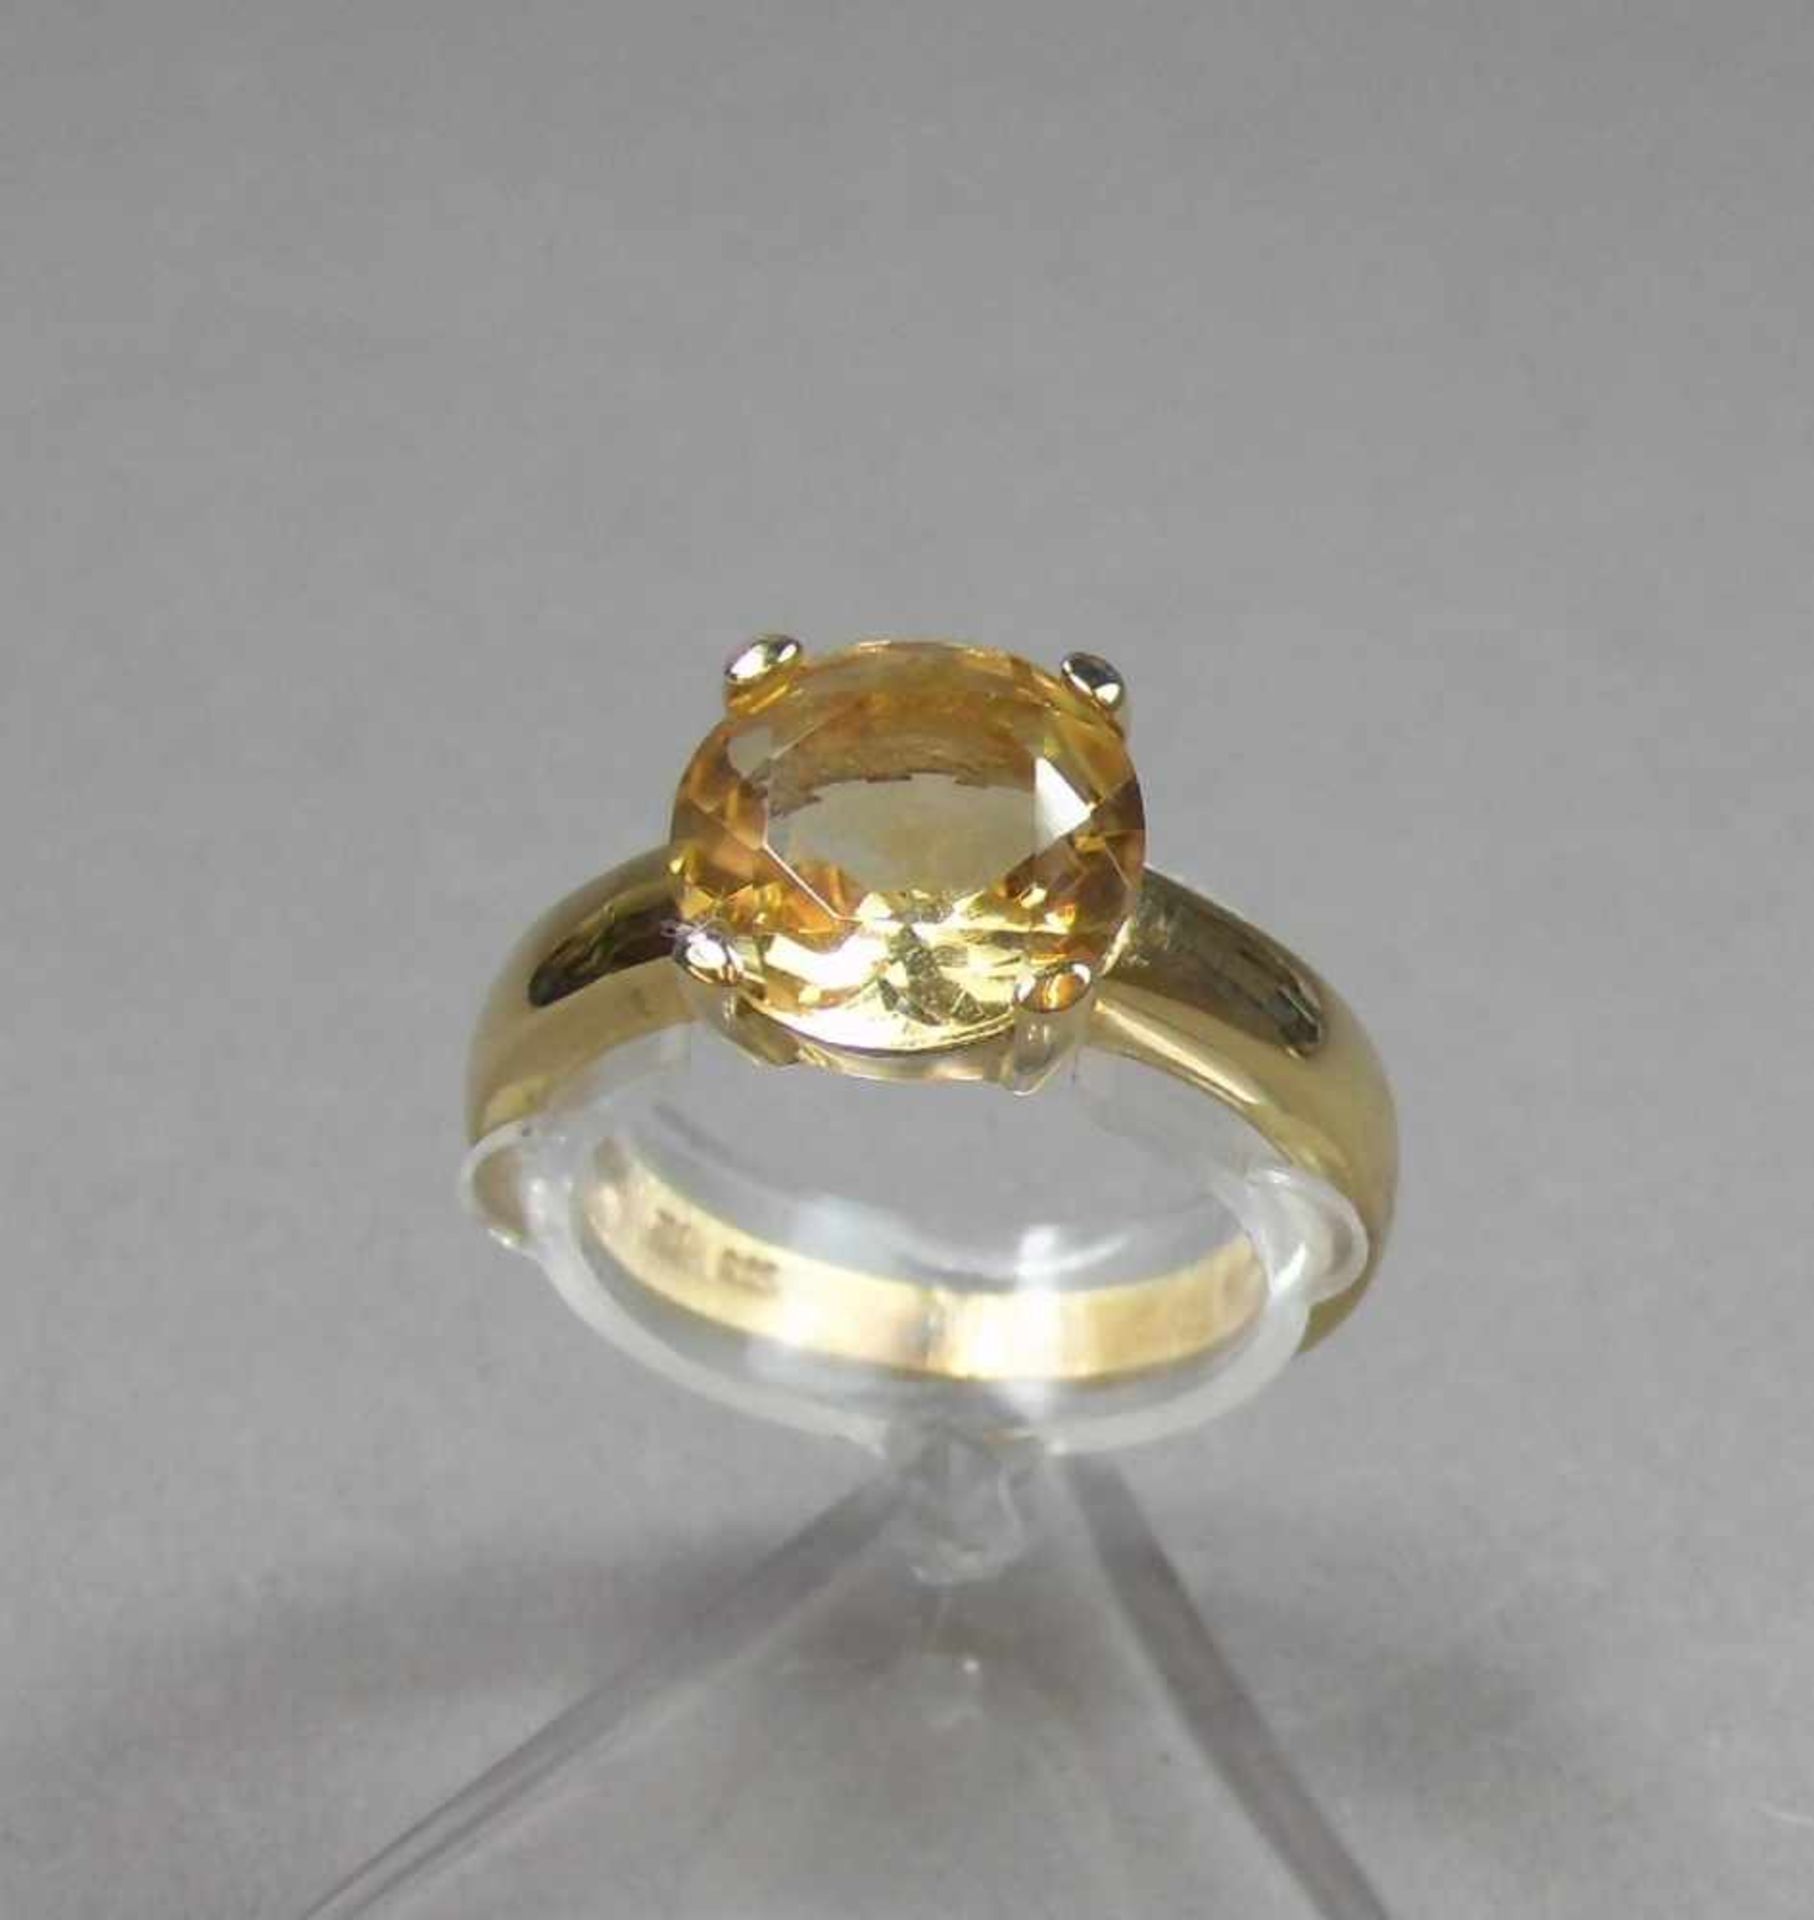 RING, 375er Gelbgold (3,8 g), besetzt mit einem Citrin. Ringkopfmaße: 1 x 1 cm, Ring-Gr. 57.